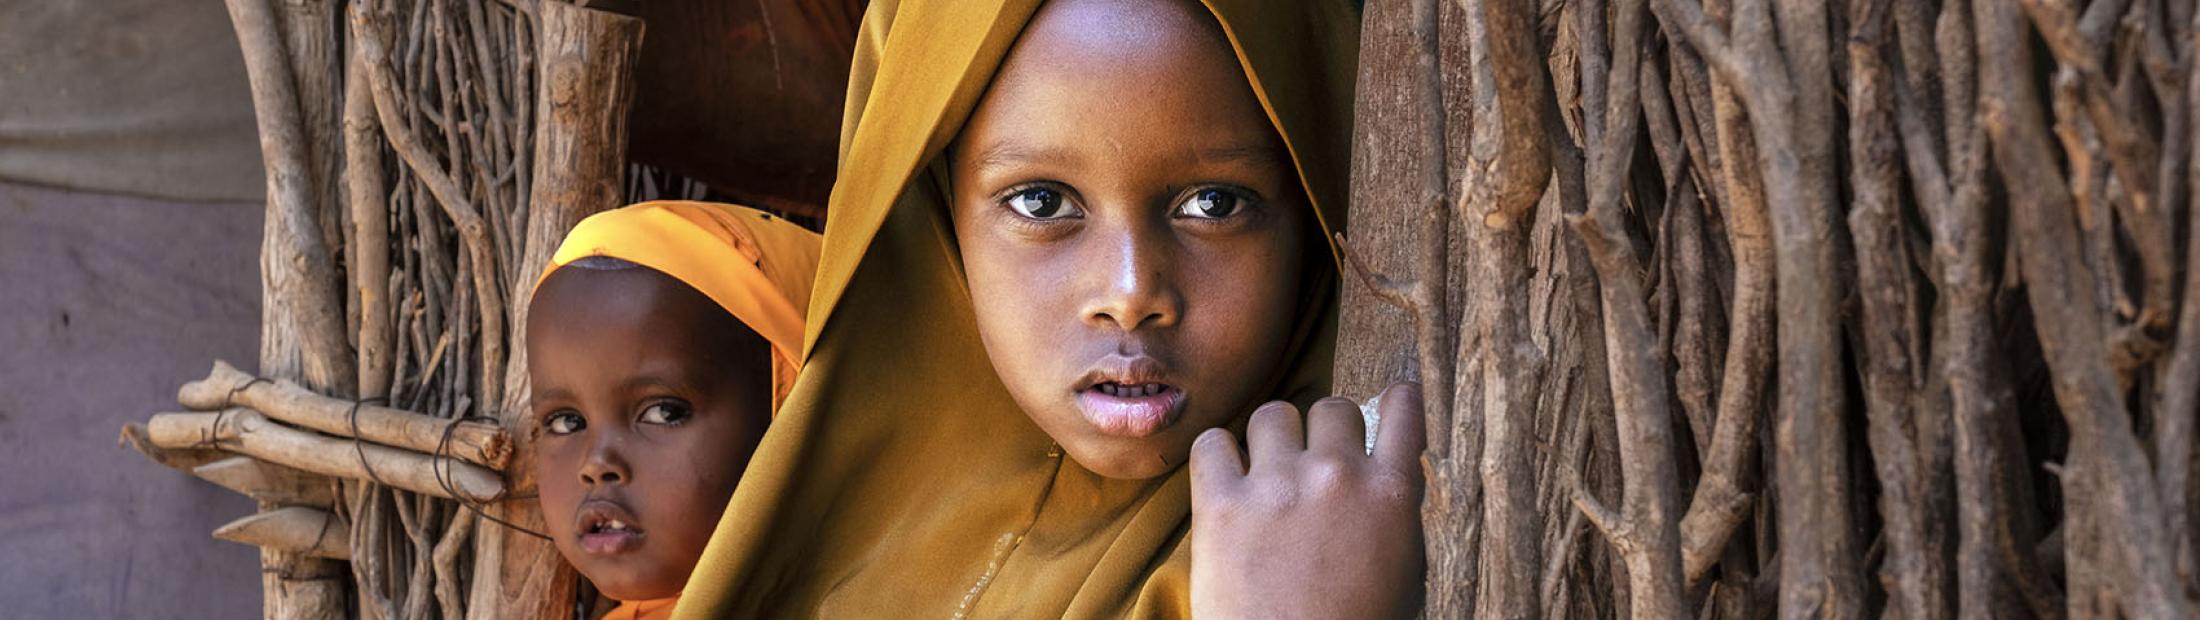 Cuerno de África: Hambruna y sequía en Somalia